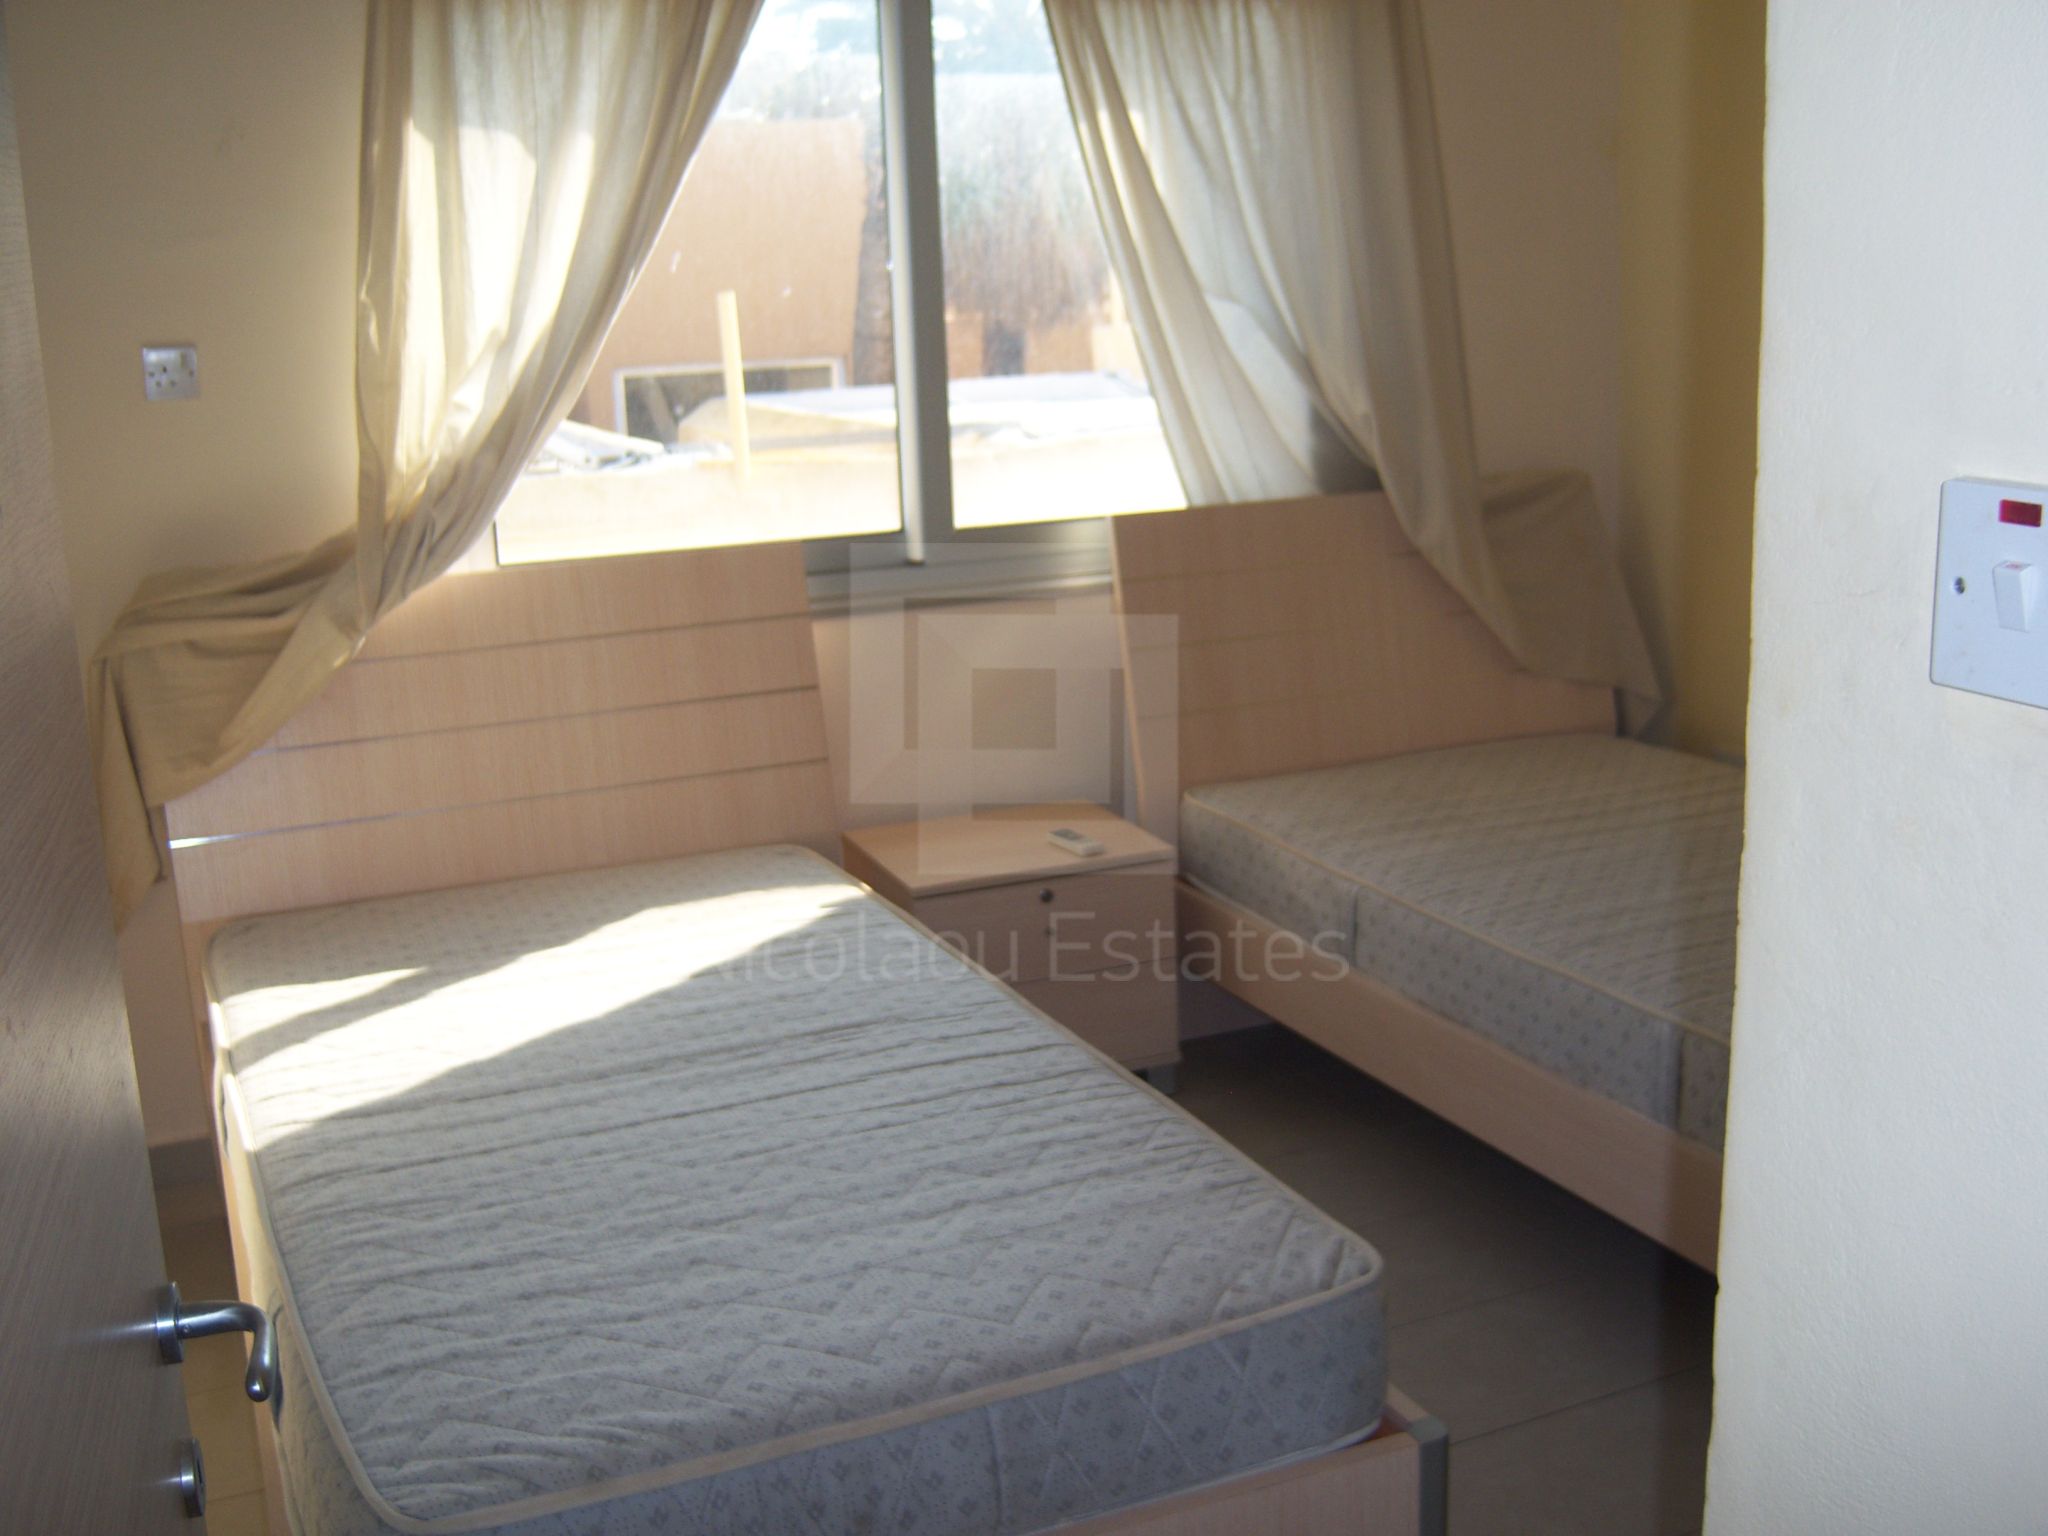 https://www.propertiescy.com/images/uploads/listings/large/14250-1593418696_bachelors-2-bedroom-8.jpg